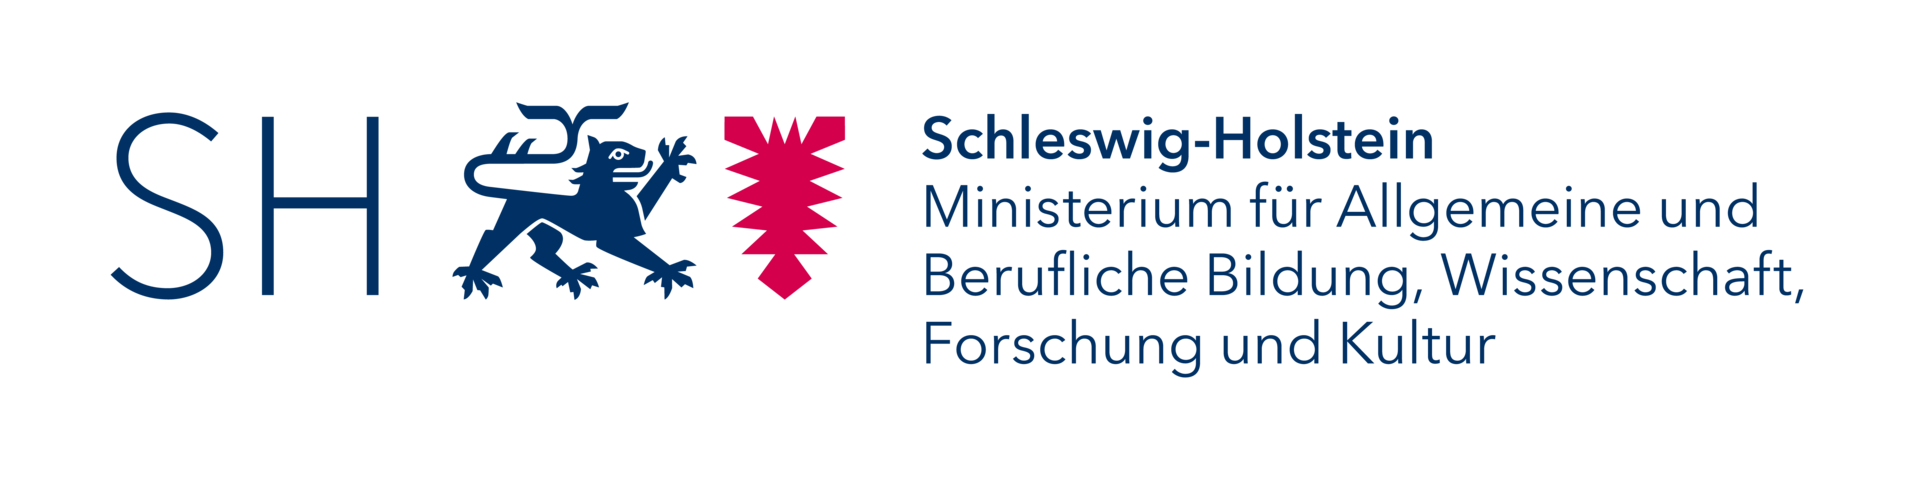 Logo des Schleswig-Holsteinischen Bildungsministeriums